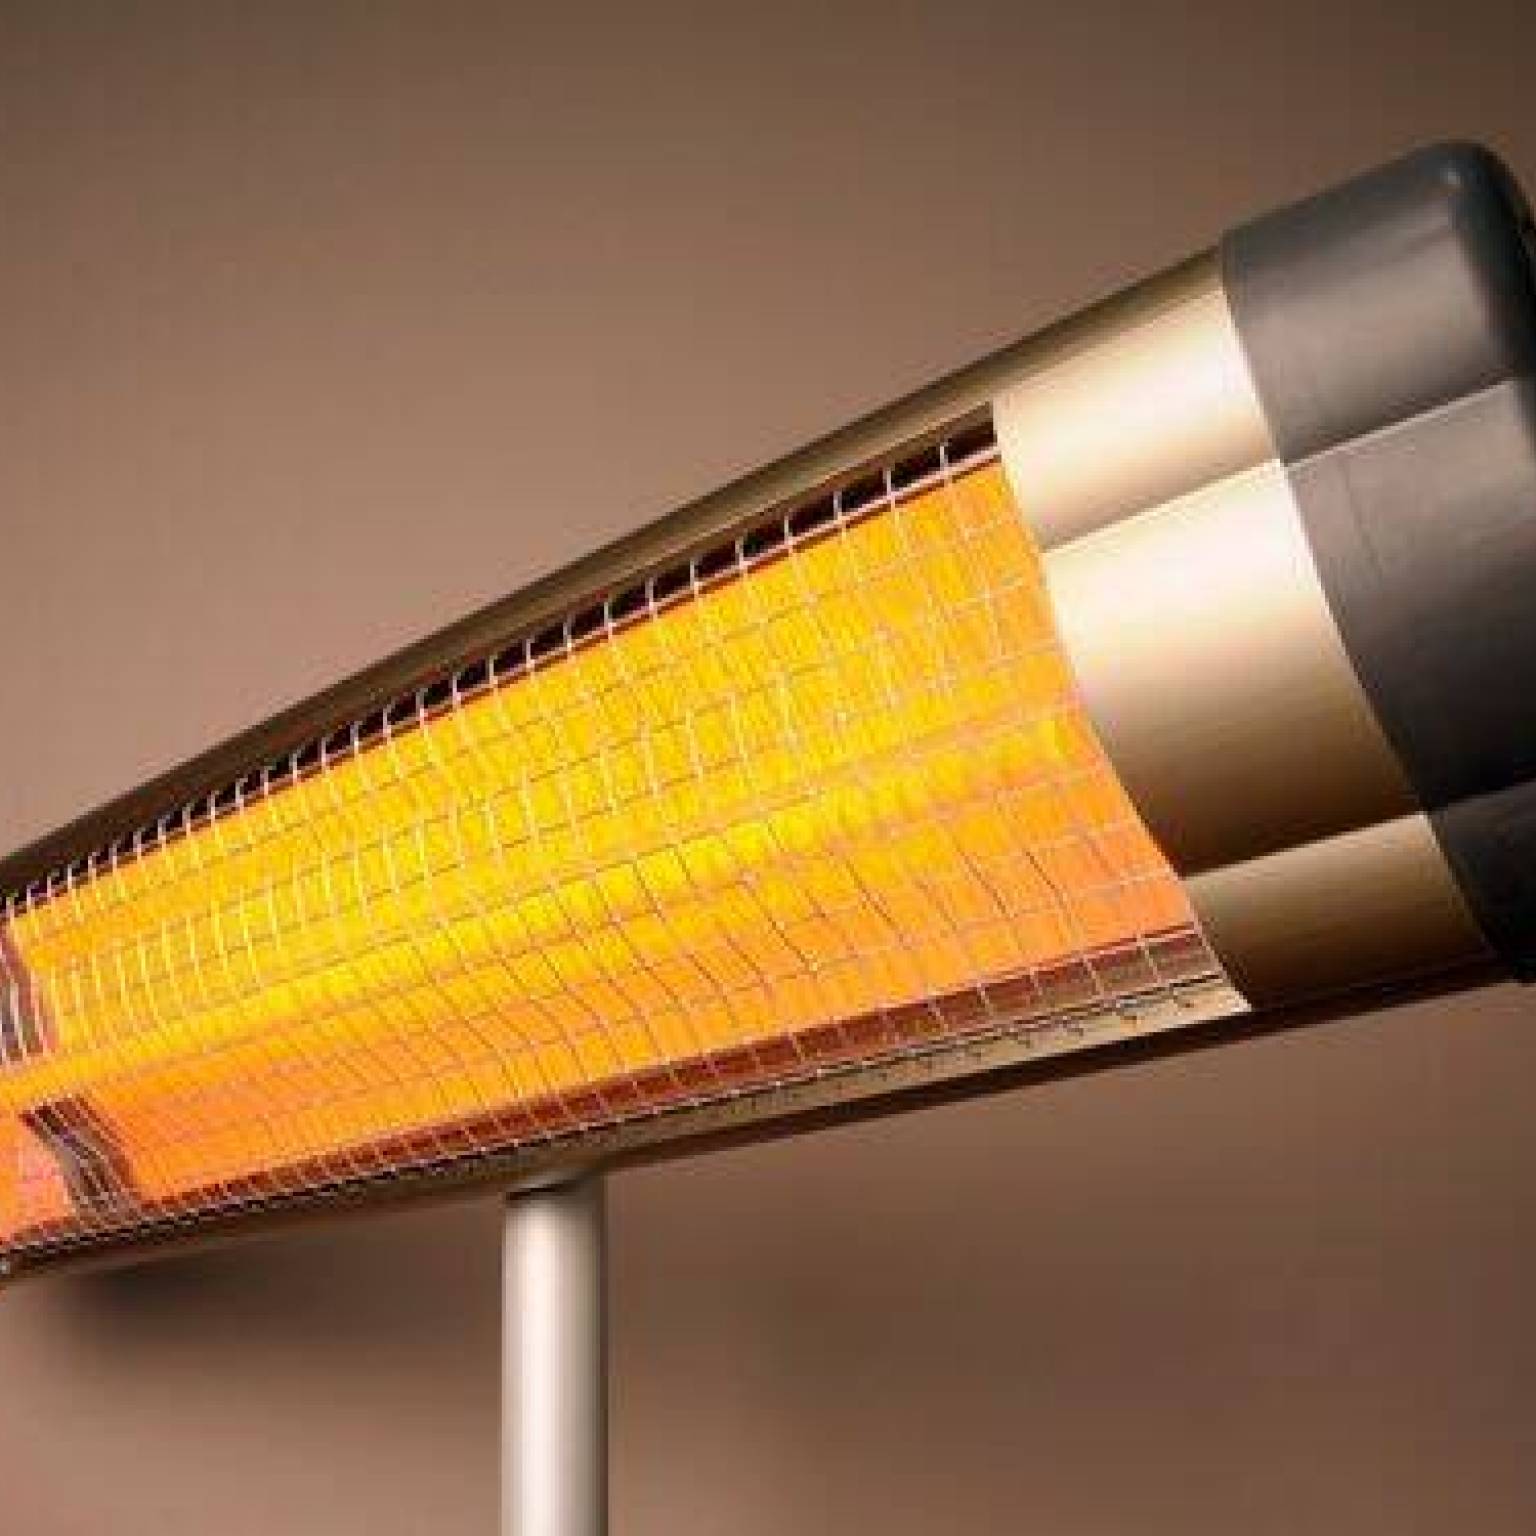 Powody, dlaczego warto zainwestować w elektryczny promiennik: Najszybszy sposób na utrzymanie ciepła w domu